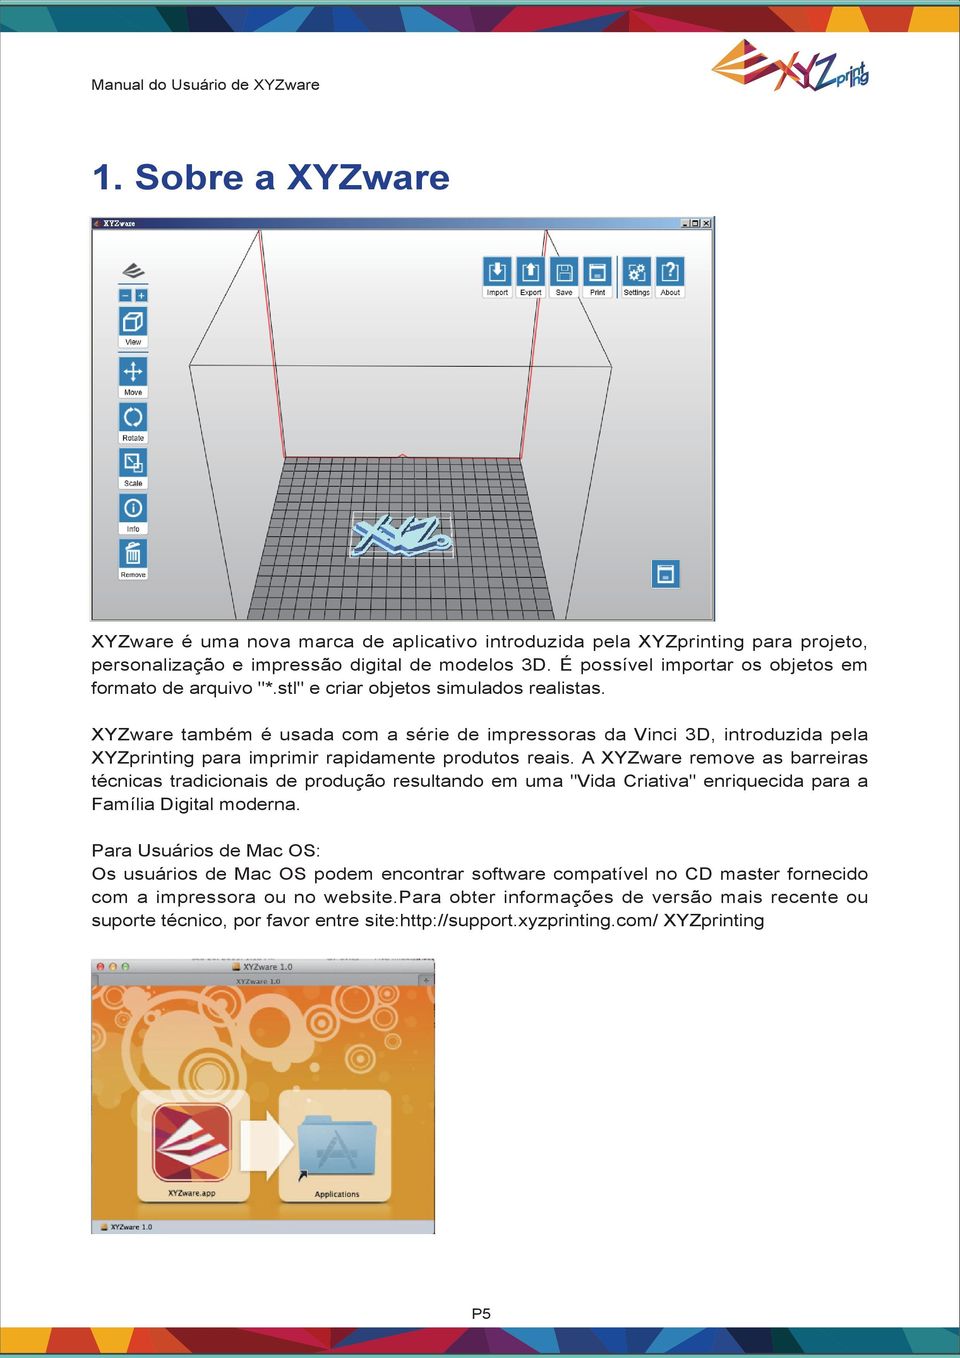 XYZware também é usada com a série de impressoras da Vinci 3D, introduzida pela XYZprinting para imprimir rapidamente produtos reais.